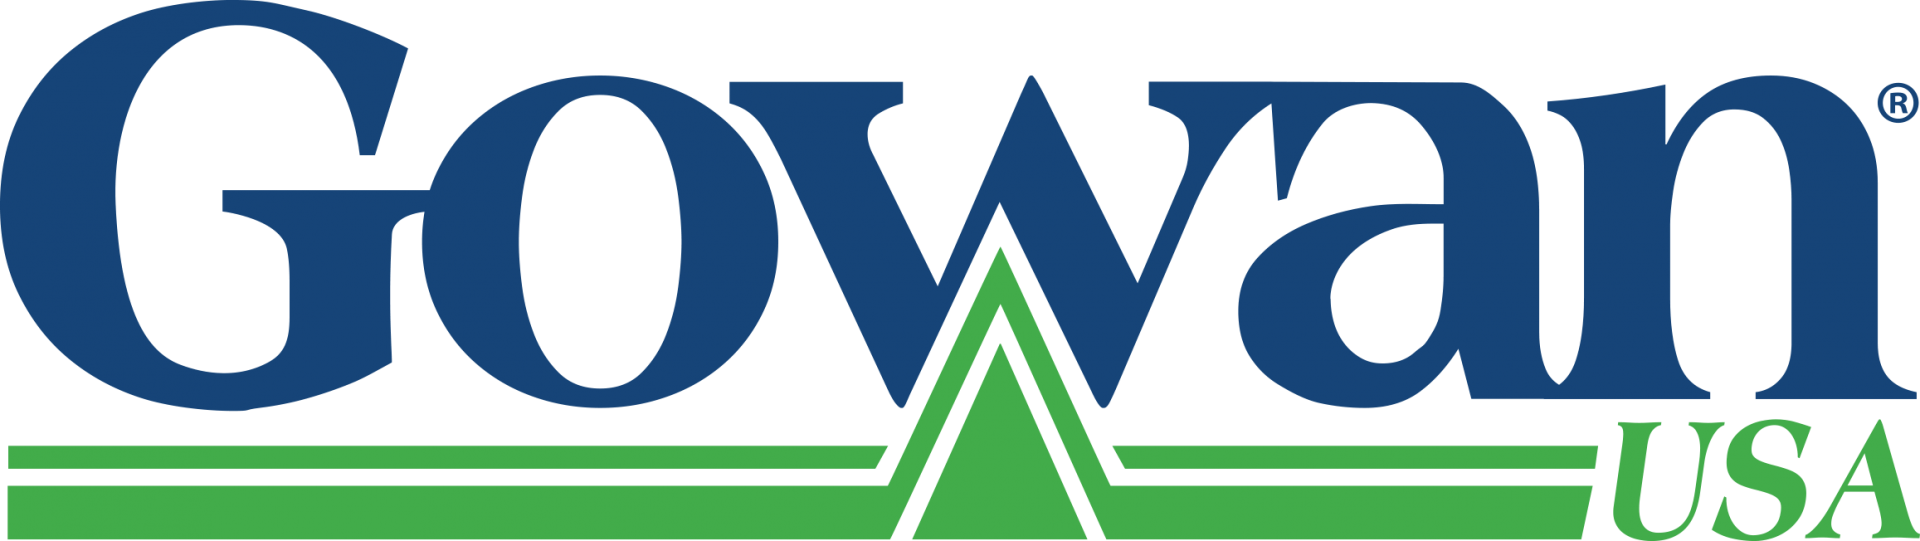 Gowen USA logo